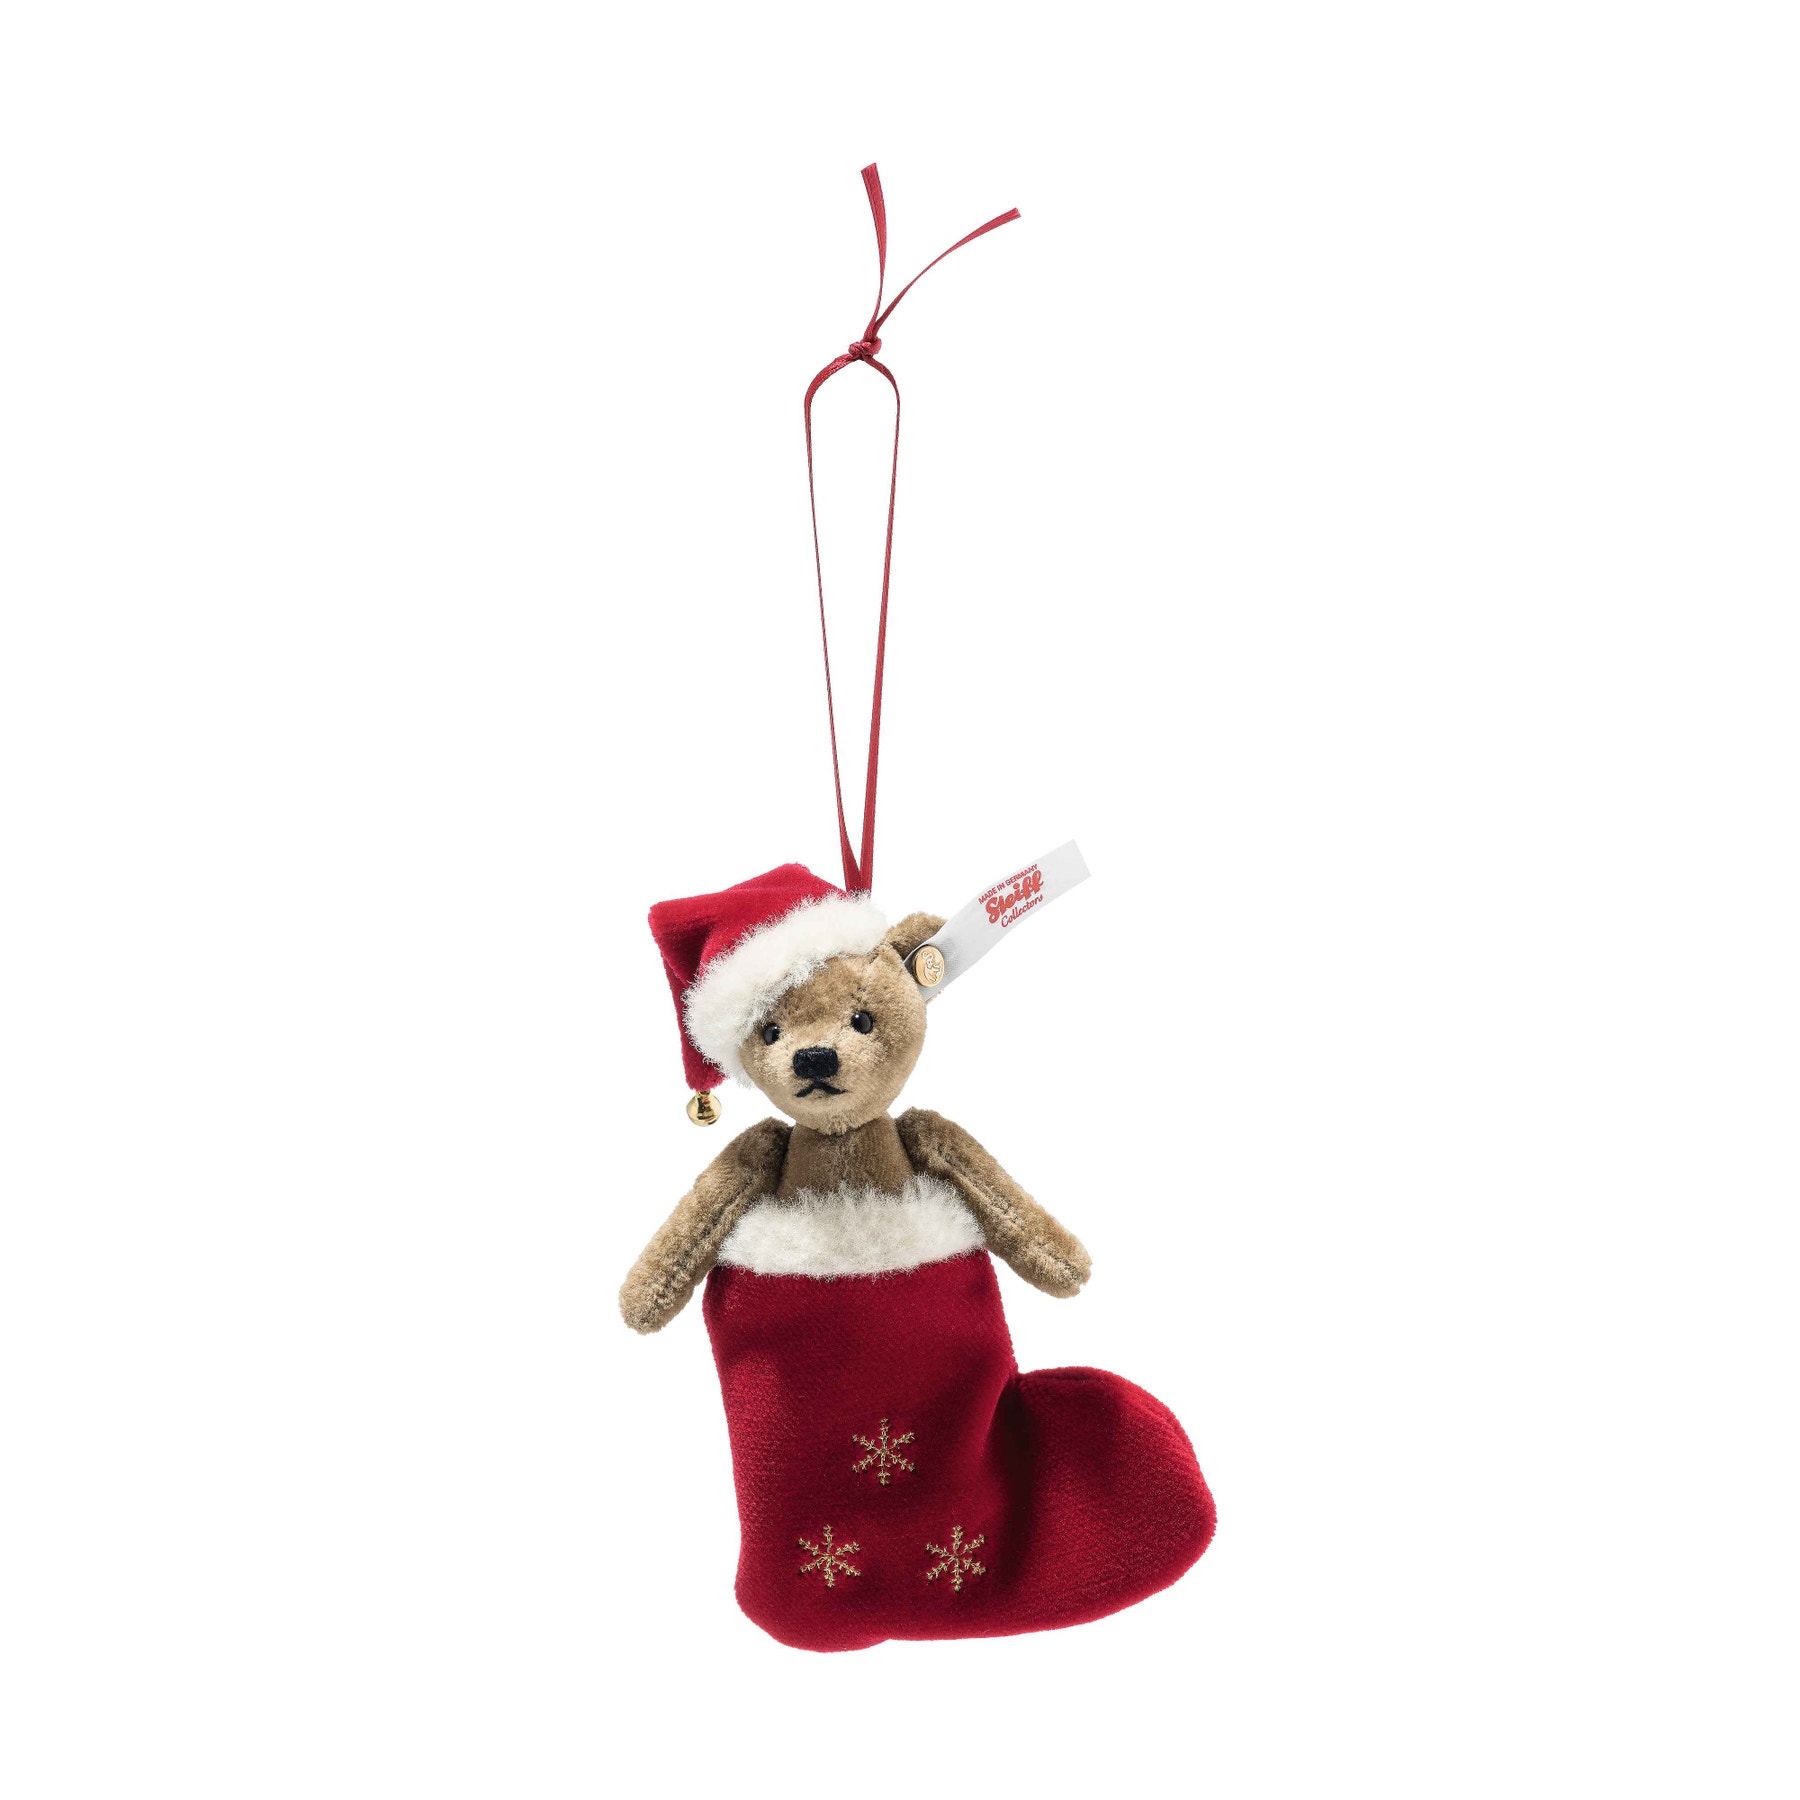 Christmas Teddy bear ornament